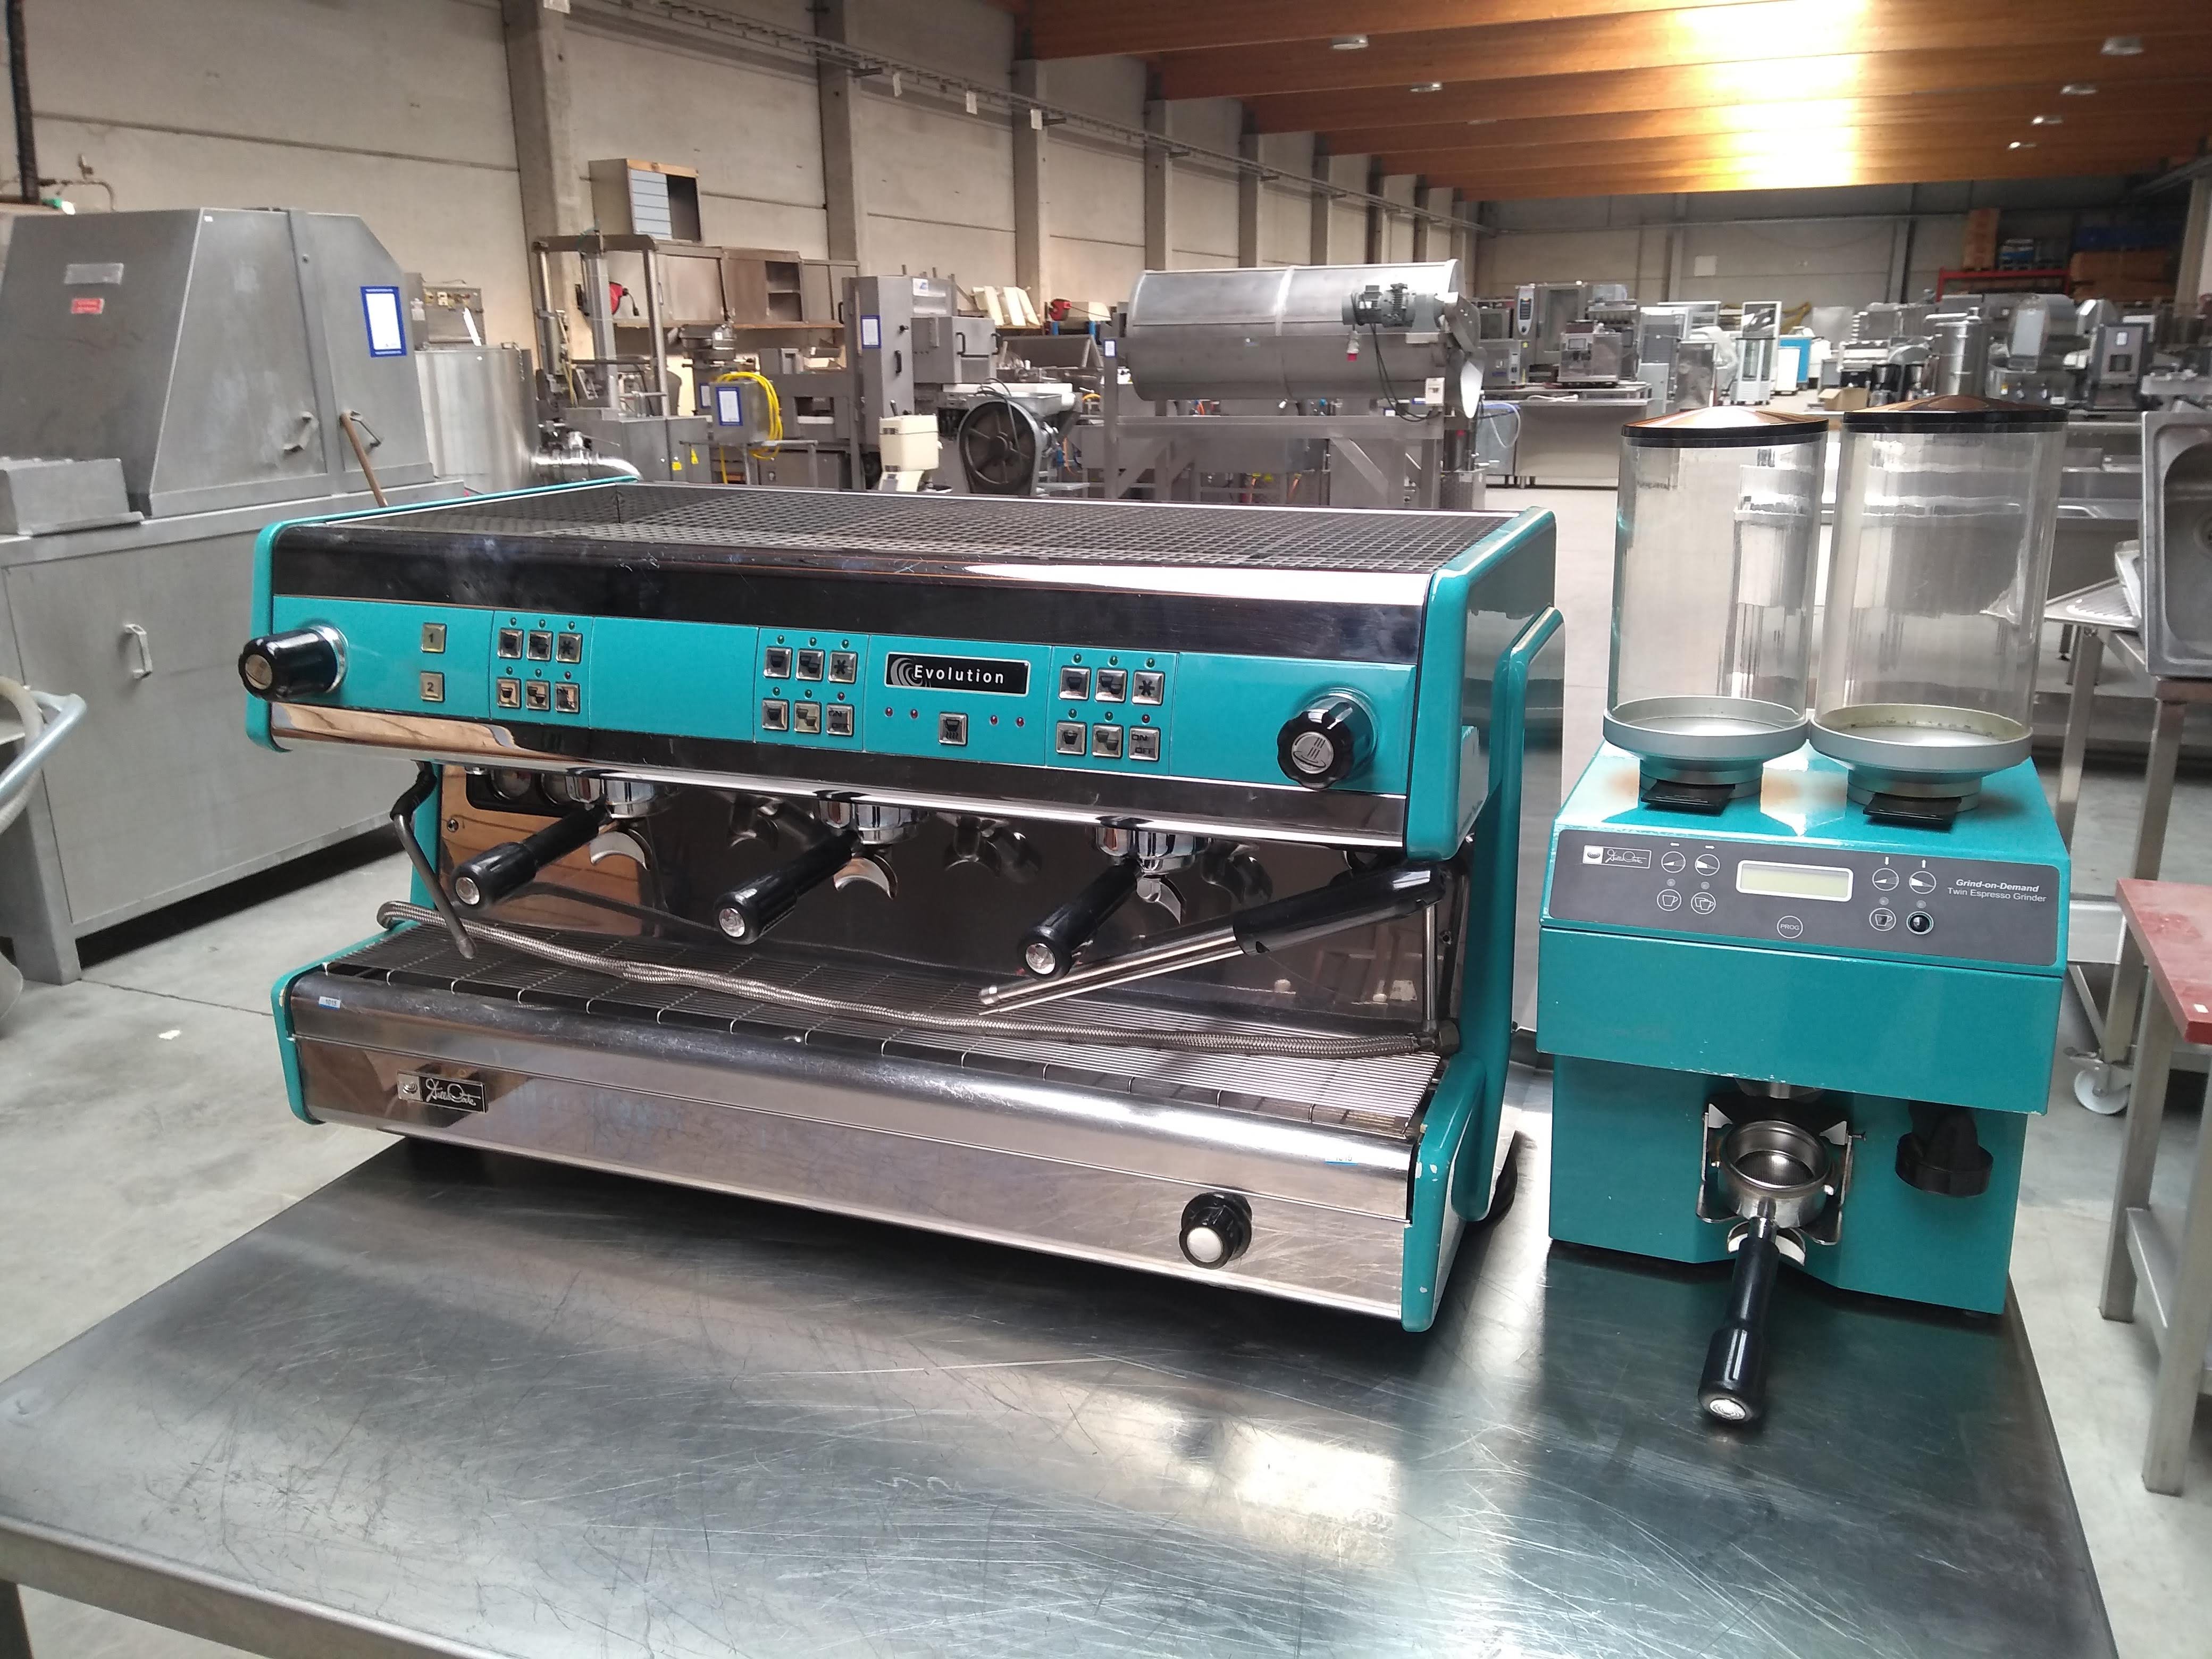 Kaal Brandweerman Veilig Expressomachine dalla corte met koffiemolen tweedehands 2de hands te koop  espressomachine evolution | Bart Rotsaert Machinery